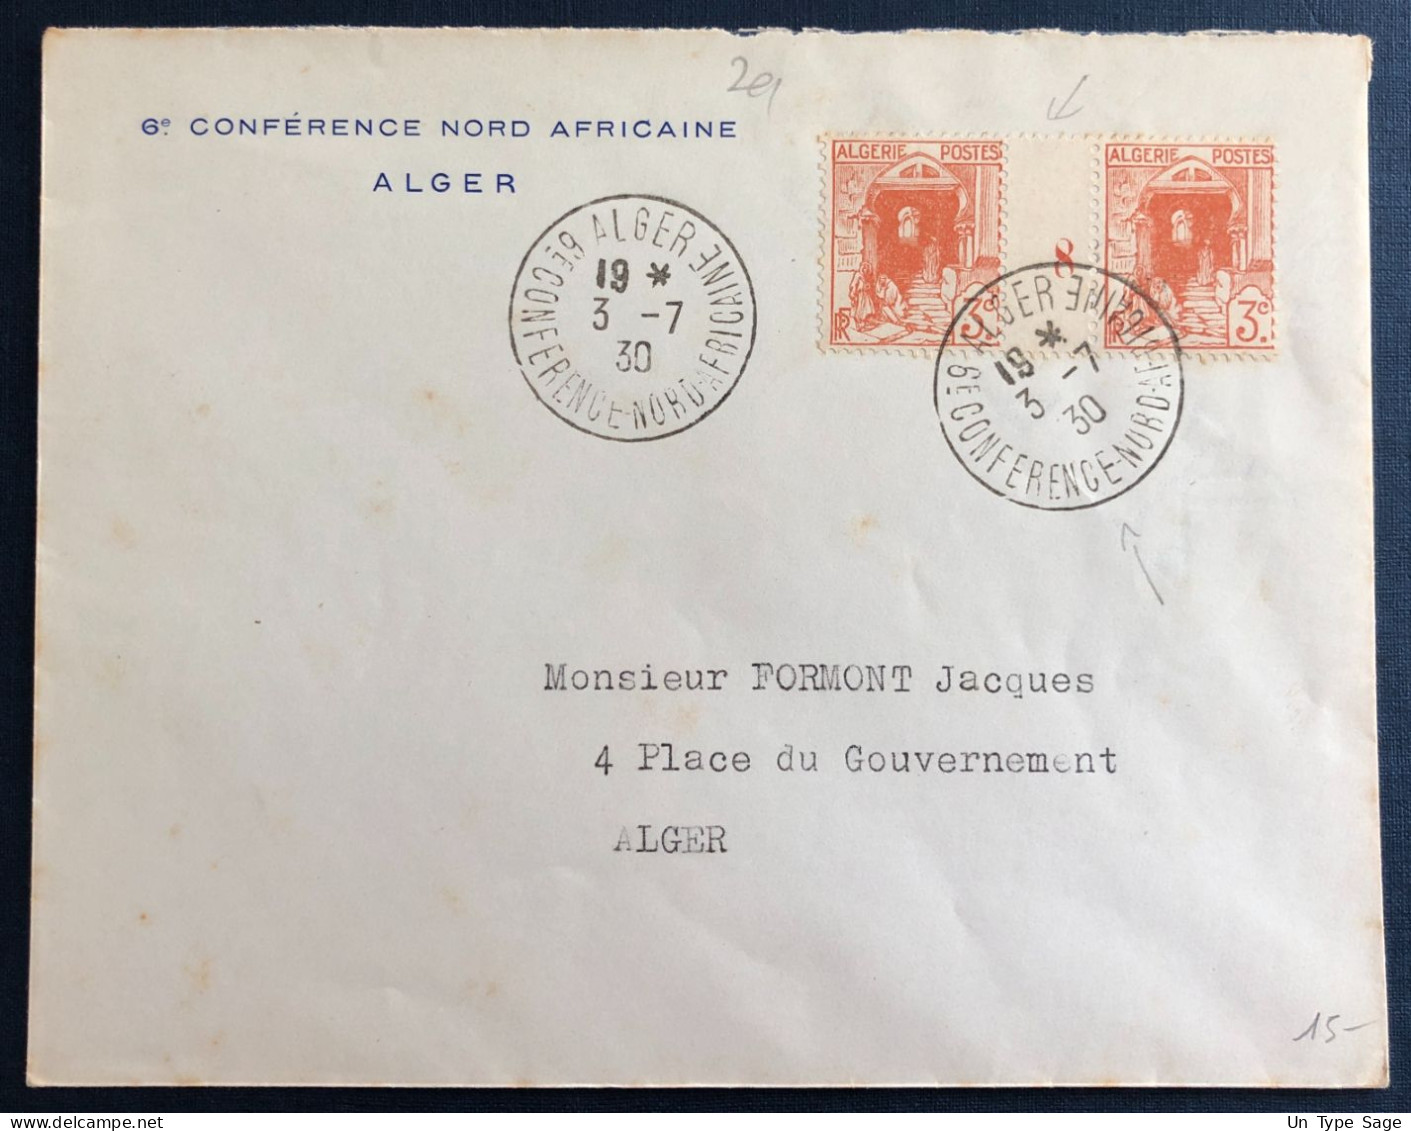 Algérie, Divers (millésime) Sur Enveloppe TAD Alger, 6e Conférence Nord Africaine 3.7.1930 - (B3359) - Covers & Documents